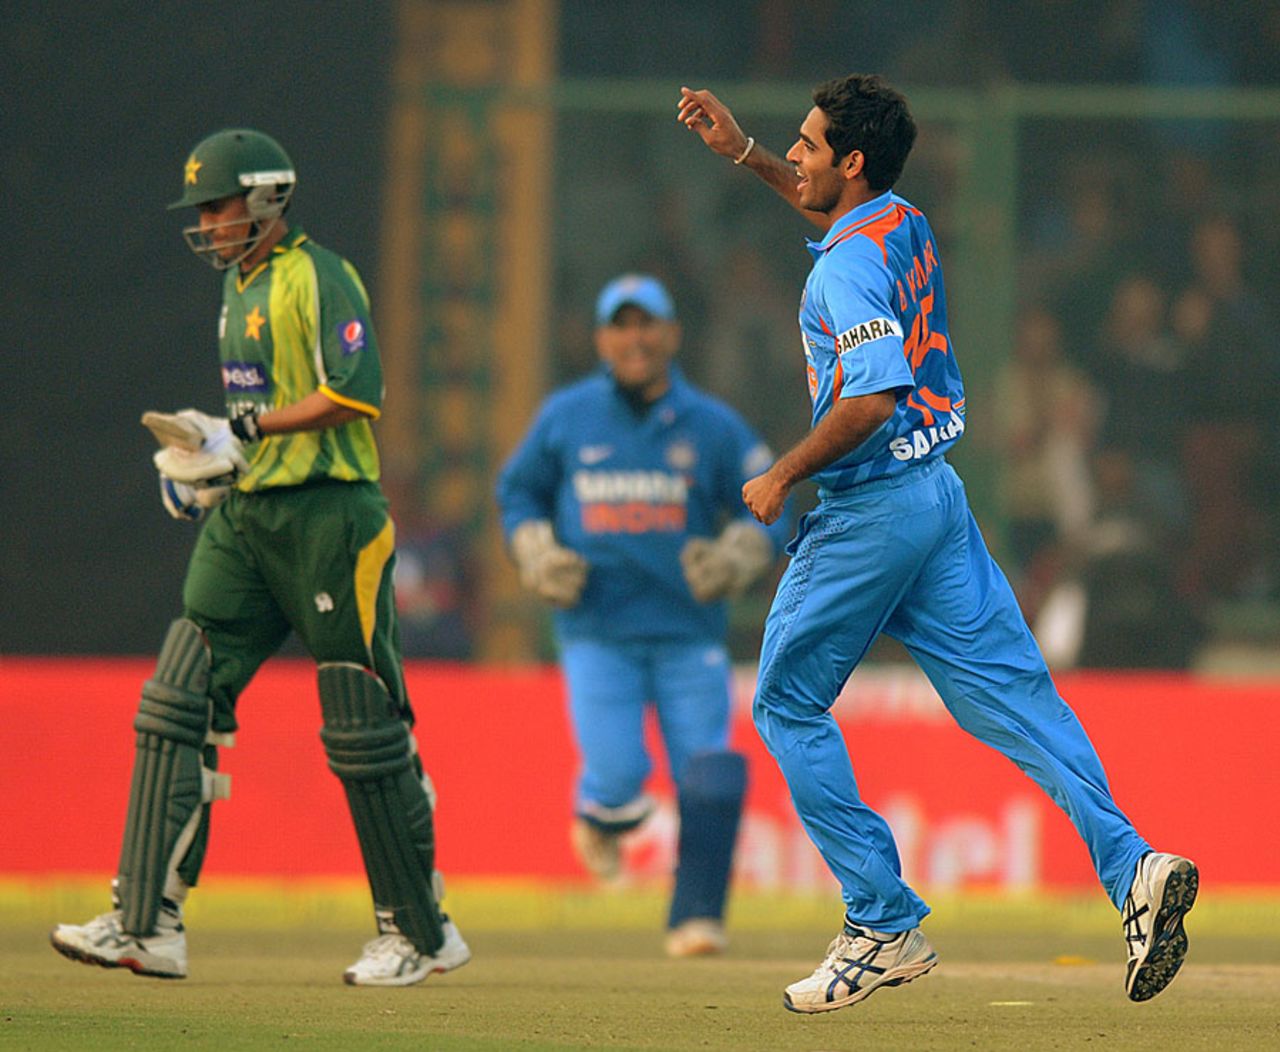 Bhuvneshwar Kumar took two early wickets for India, India v Pakistan, 3rd ODI, Delhi, January 6, 2013